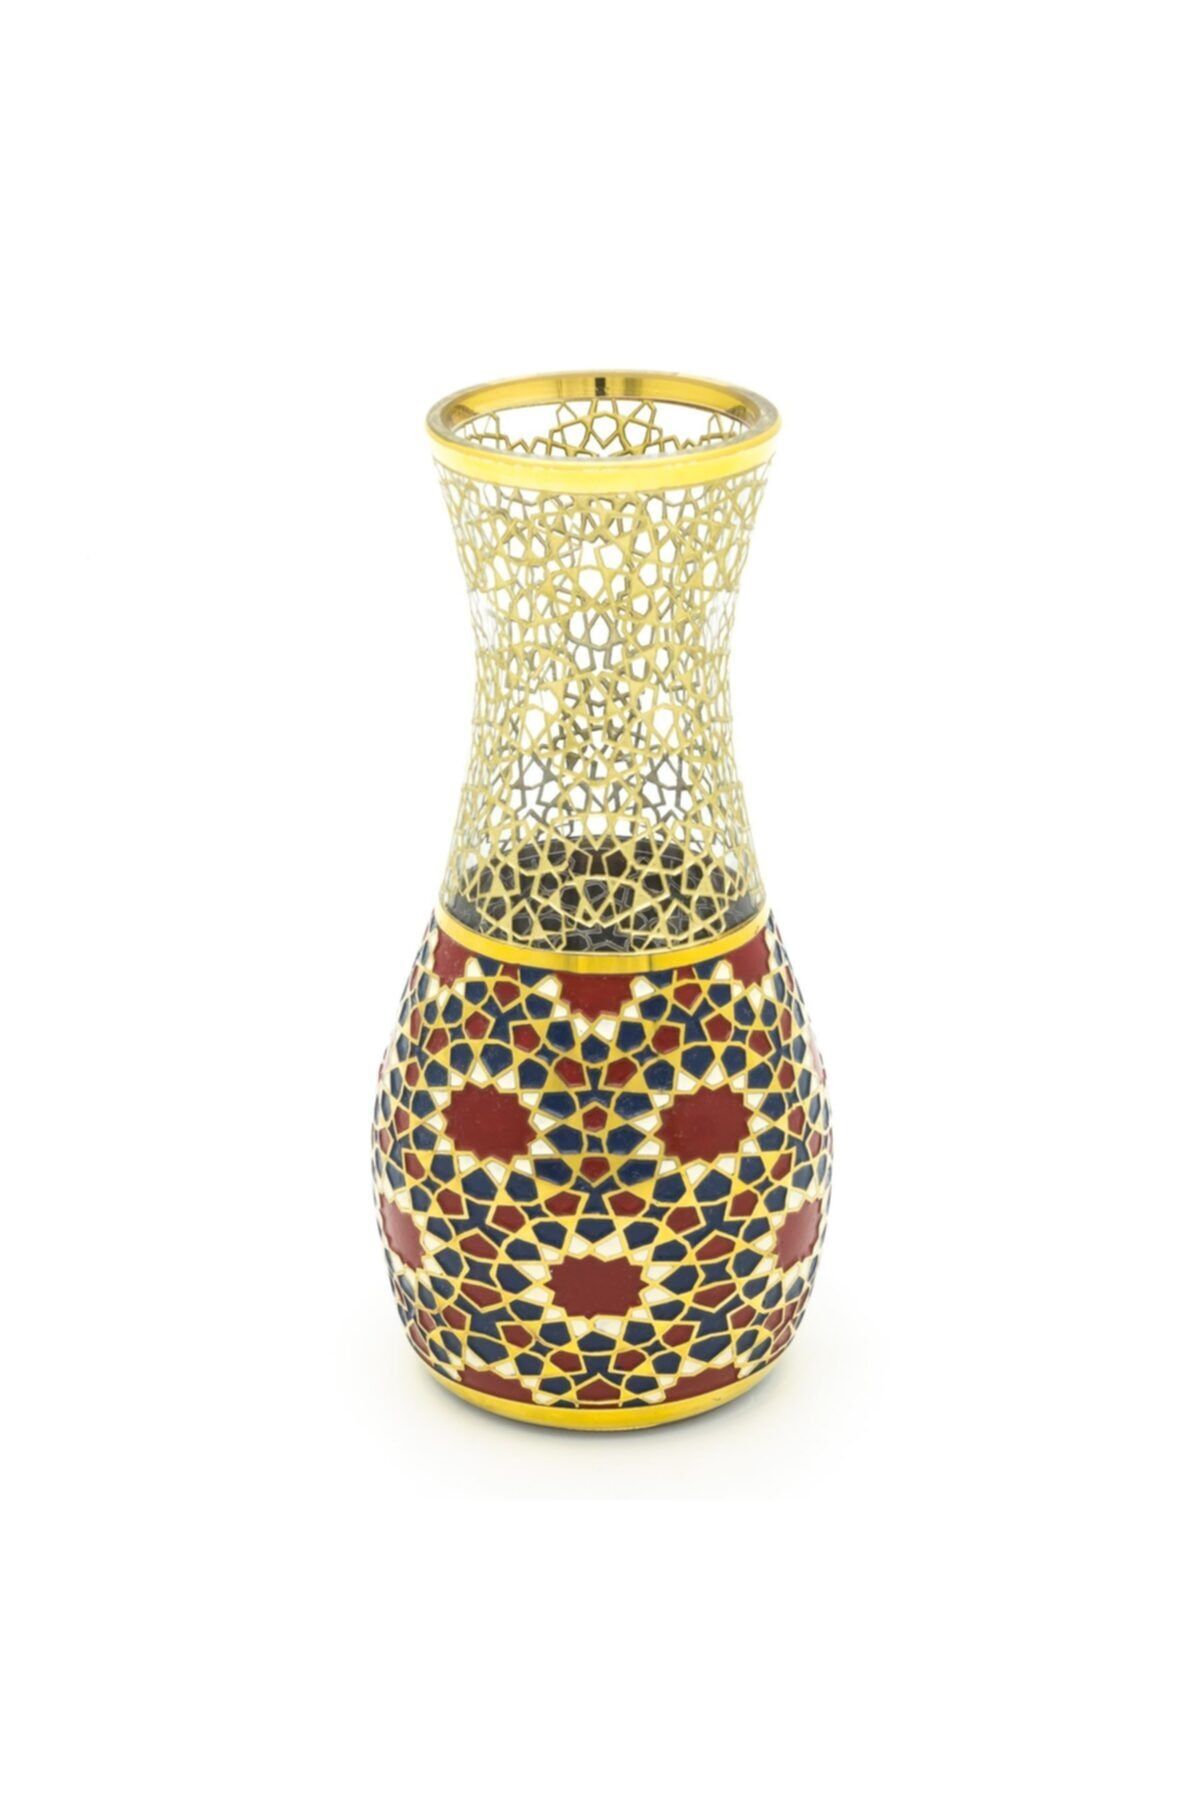 MÜZEDENAL Vazo Renkli Selçuklu Koleksiyonu